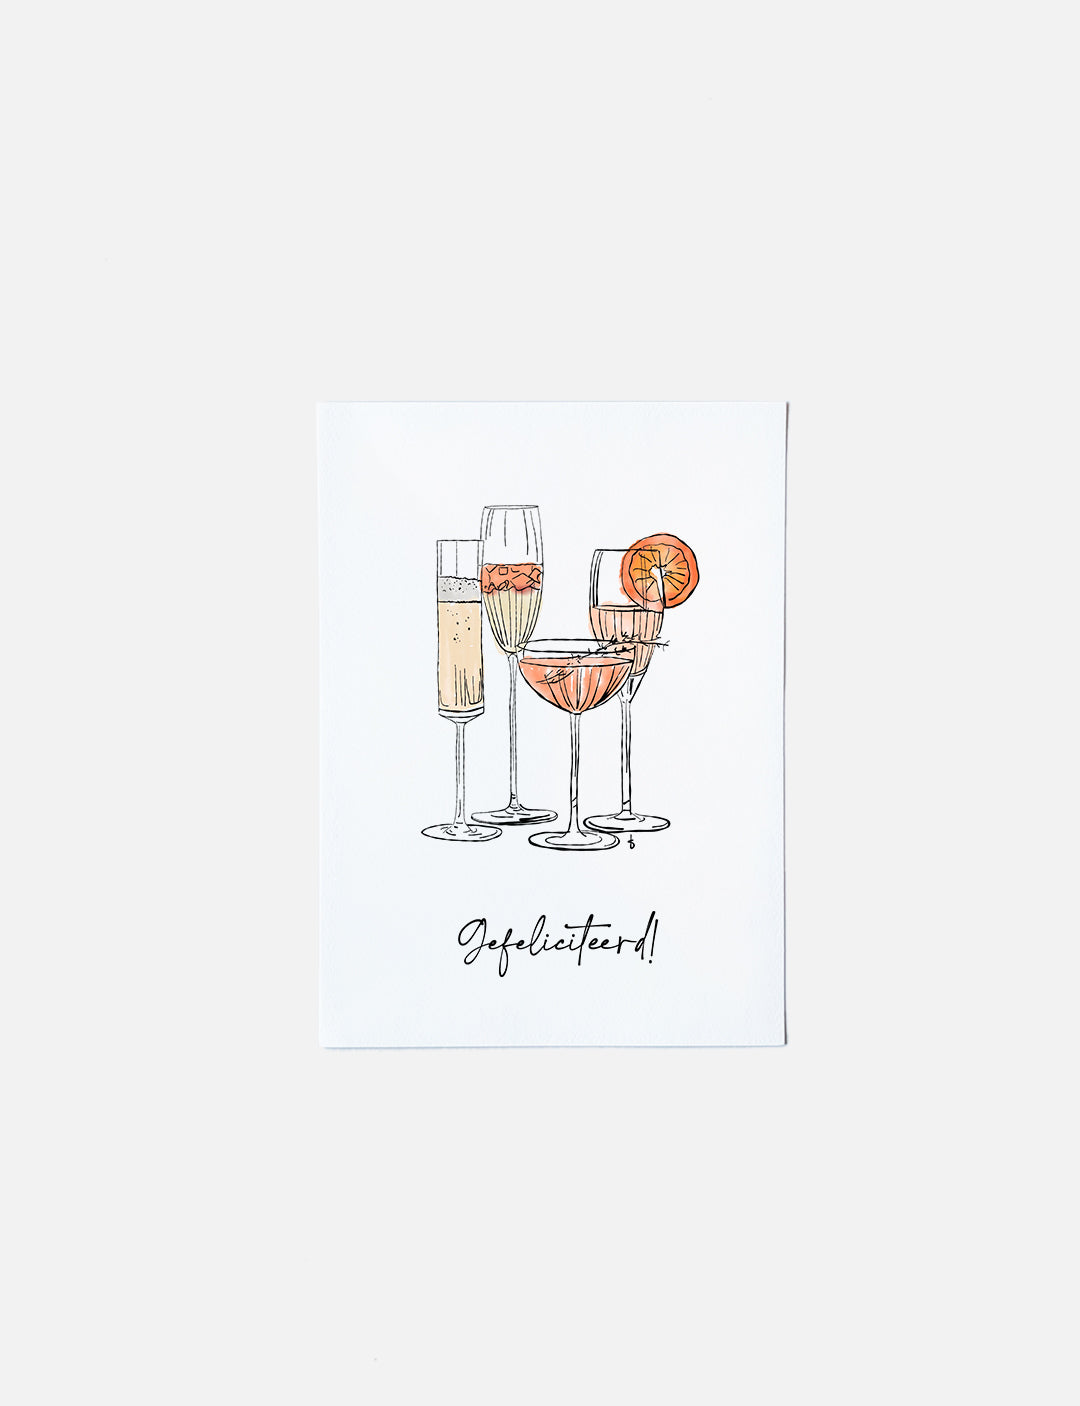 Deze felicitatiekaart op A6 formaat heeft een handgetekende illustratie van glaasjes met feestelijke bubbels en de tekst: Gefeliciteerd! Leuk om te versturen als verjaardagskaarten vrouw. Unieke kaartjes en andere mooie kaarten vind je in onze webshop. Neem een kijkje om kaarten kopen.